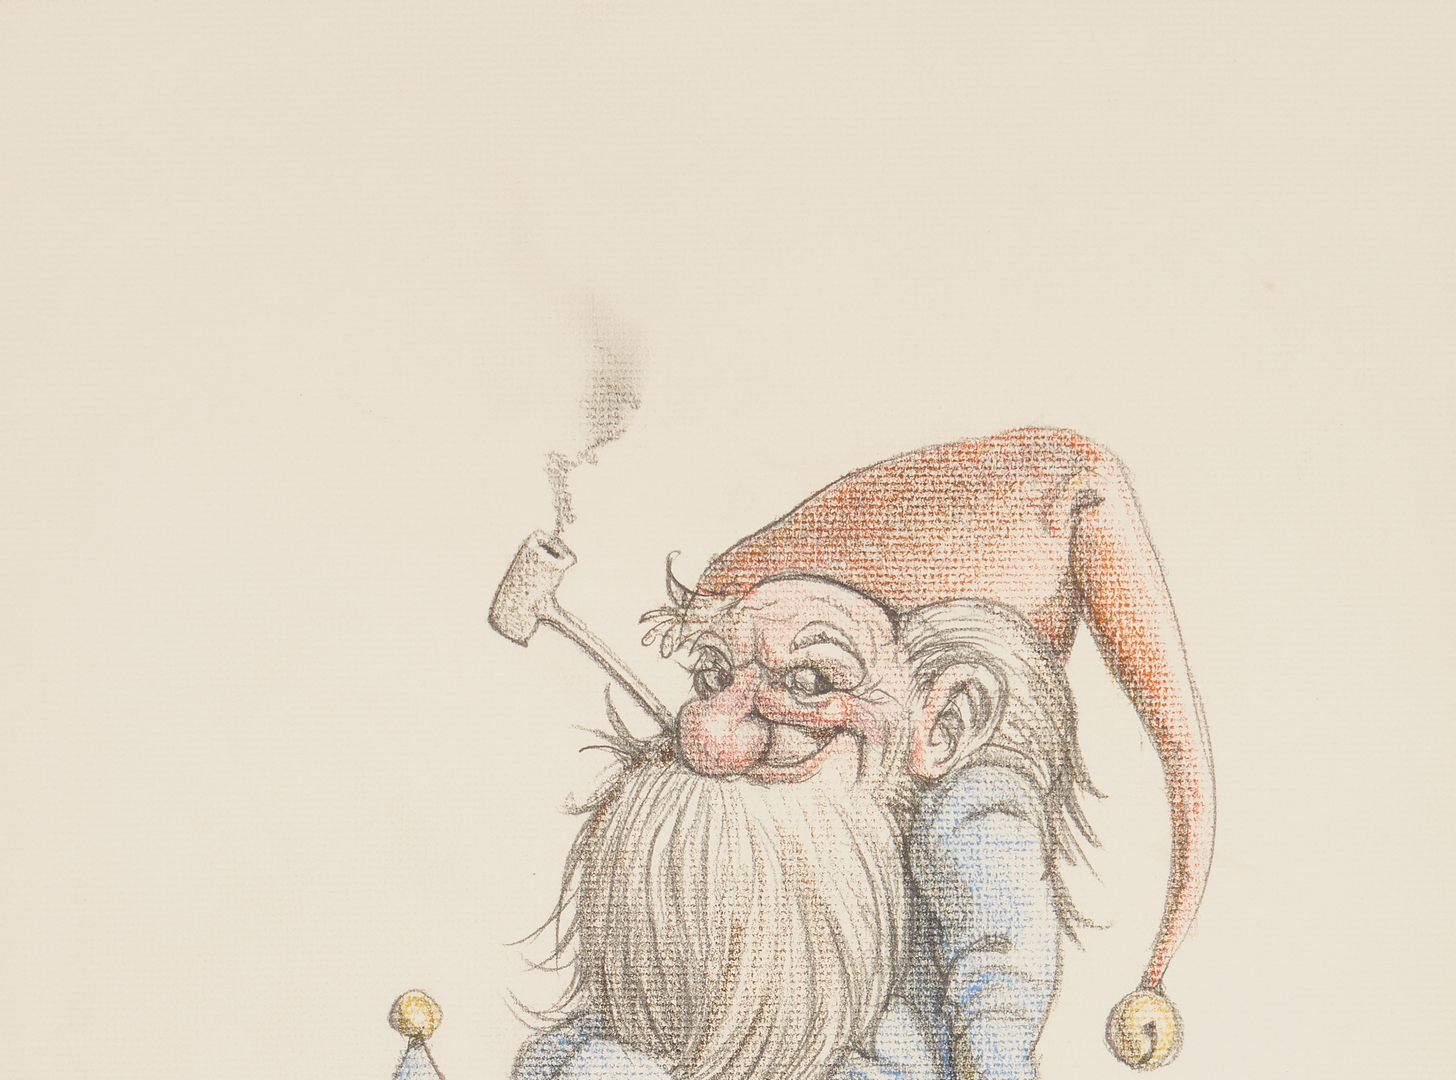 Lot 160: 2 Werner Wildner Works on Paper, Gnomes